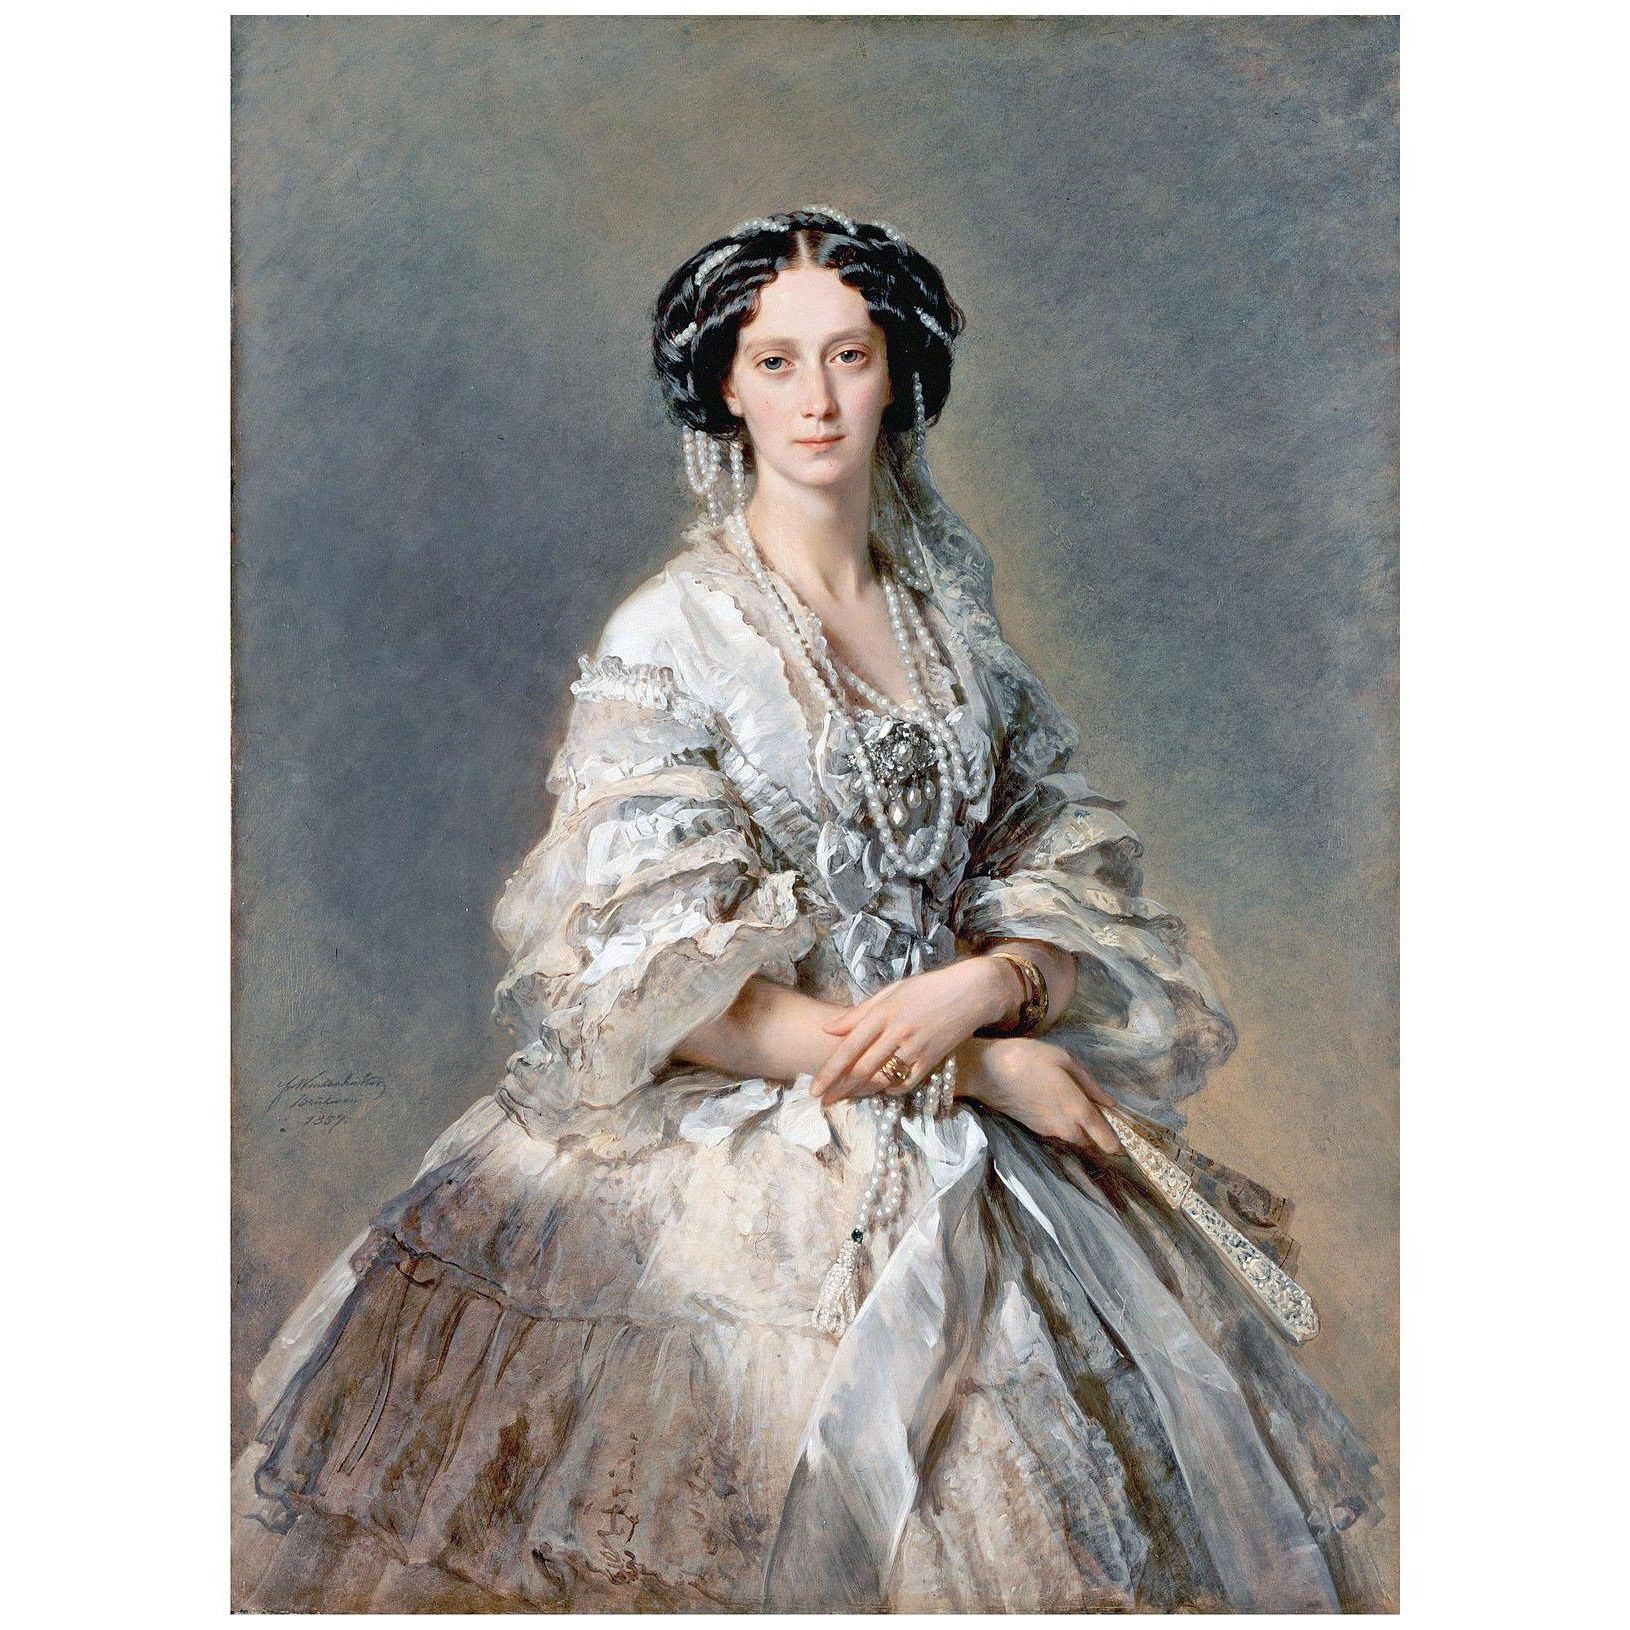 Franz Winterhalter. Kaiserin Maria Alexandrowna von Russland. 1857. Hermitage Museum